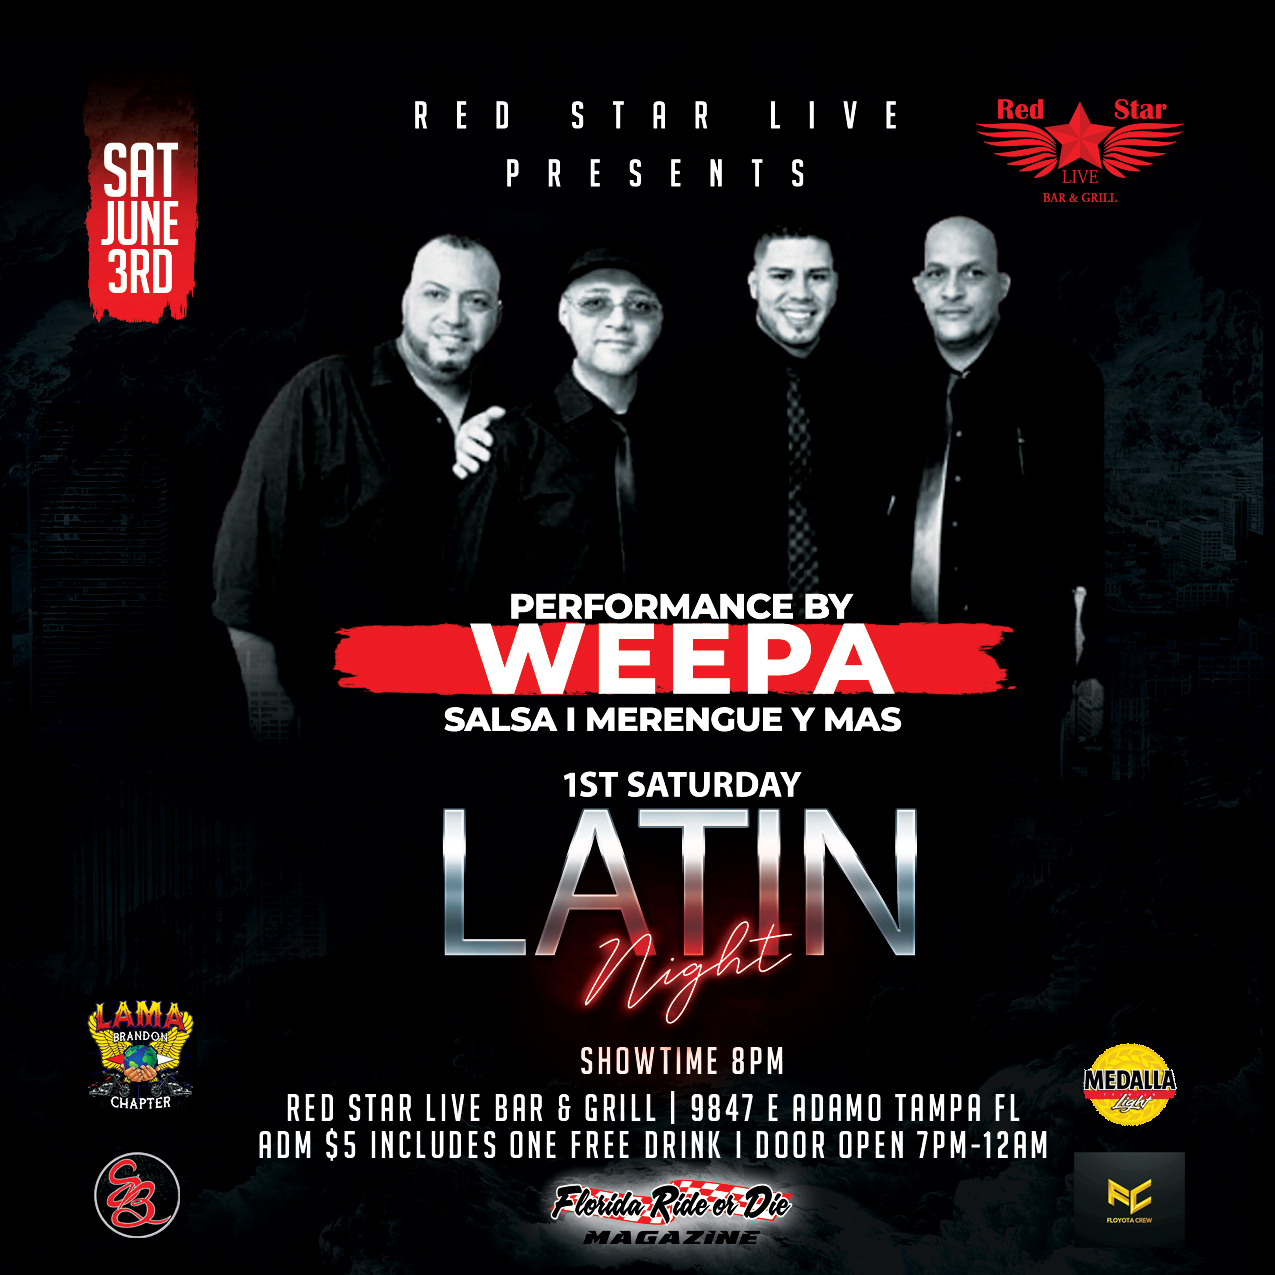 Latin Night with Weepa